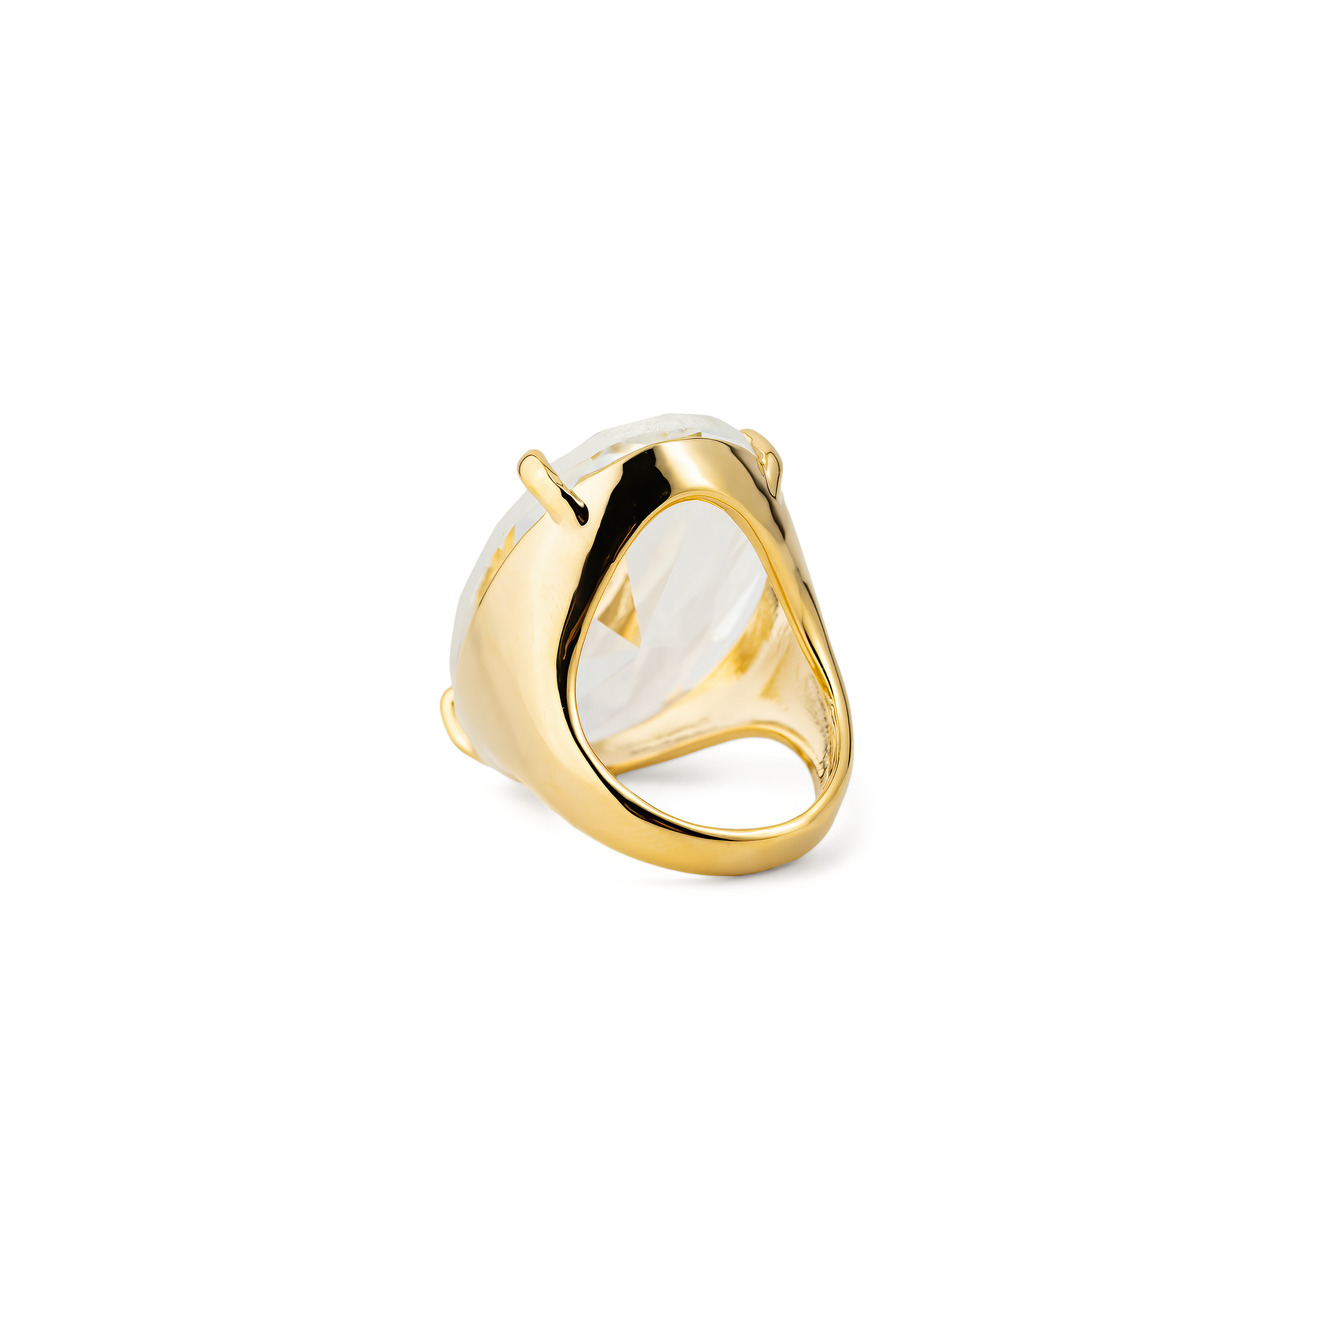 Herald Percy Золотистое кольцо с овальным кристаллом herald percy золотистая цепочка с подвеской прямоугольником с кристаллом